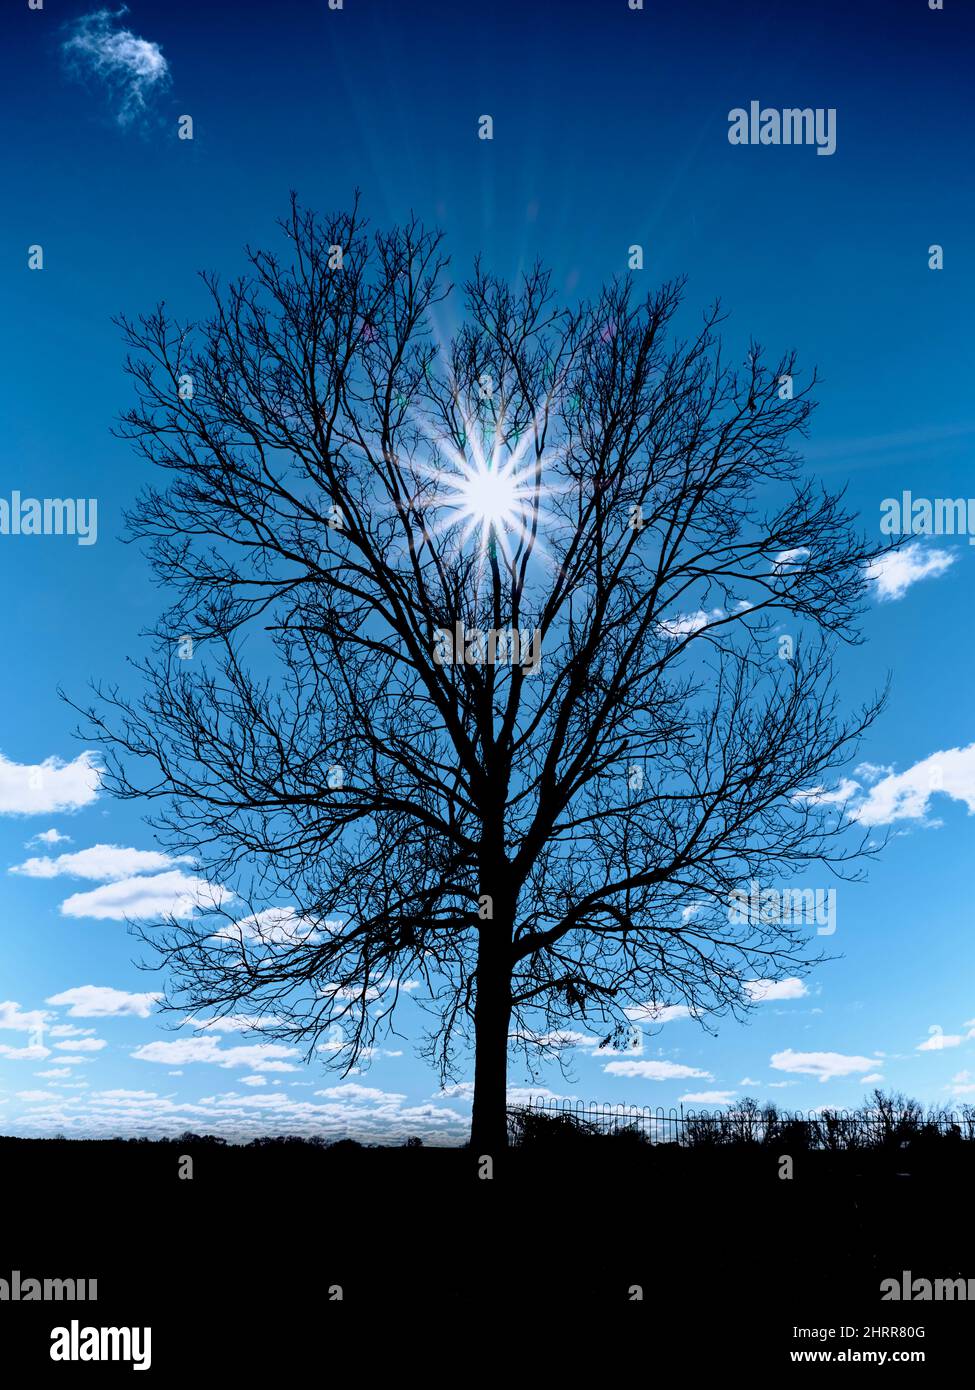 Silueta de árbol de invierno frío con cielo azul oscuro contra un sol estrellado. Foto de stock